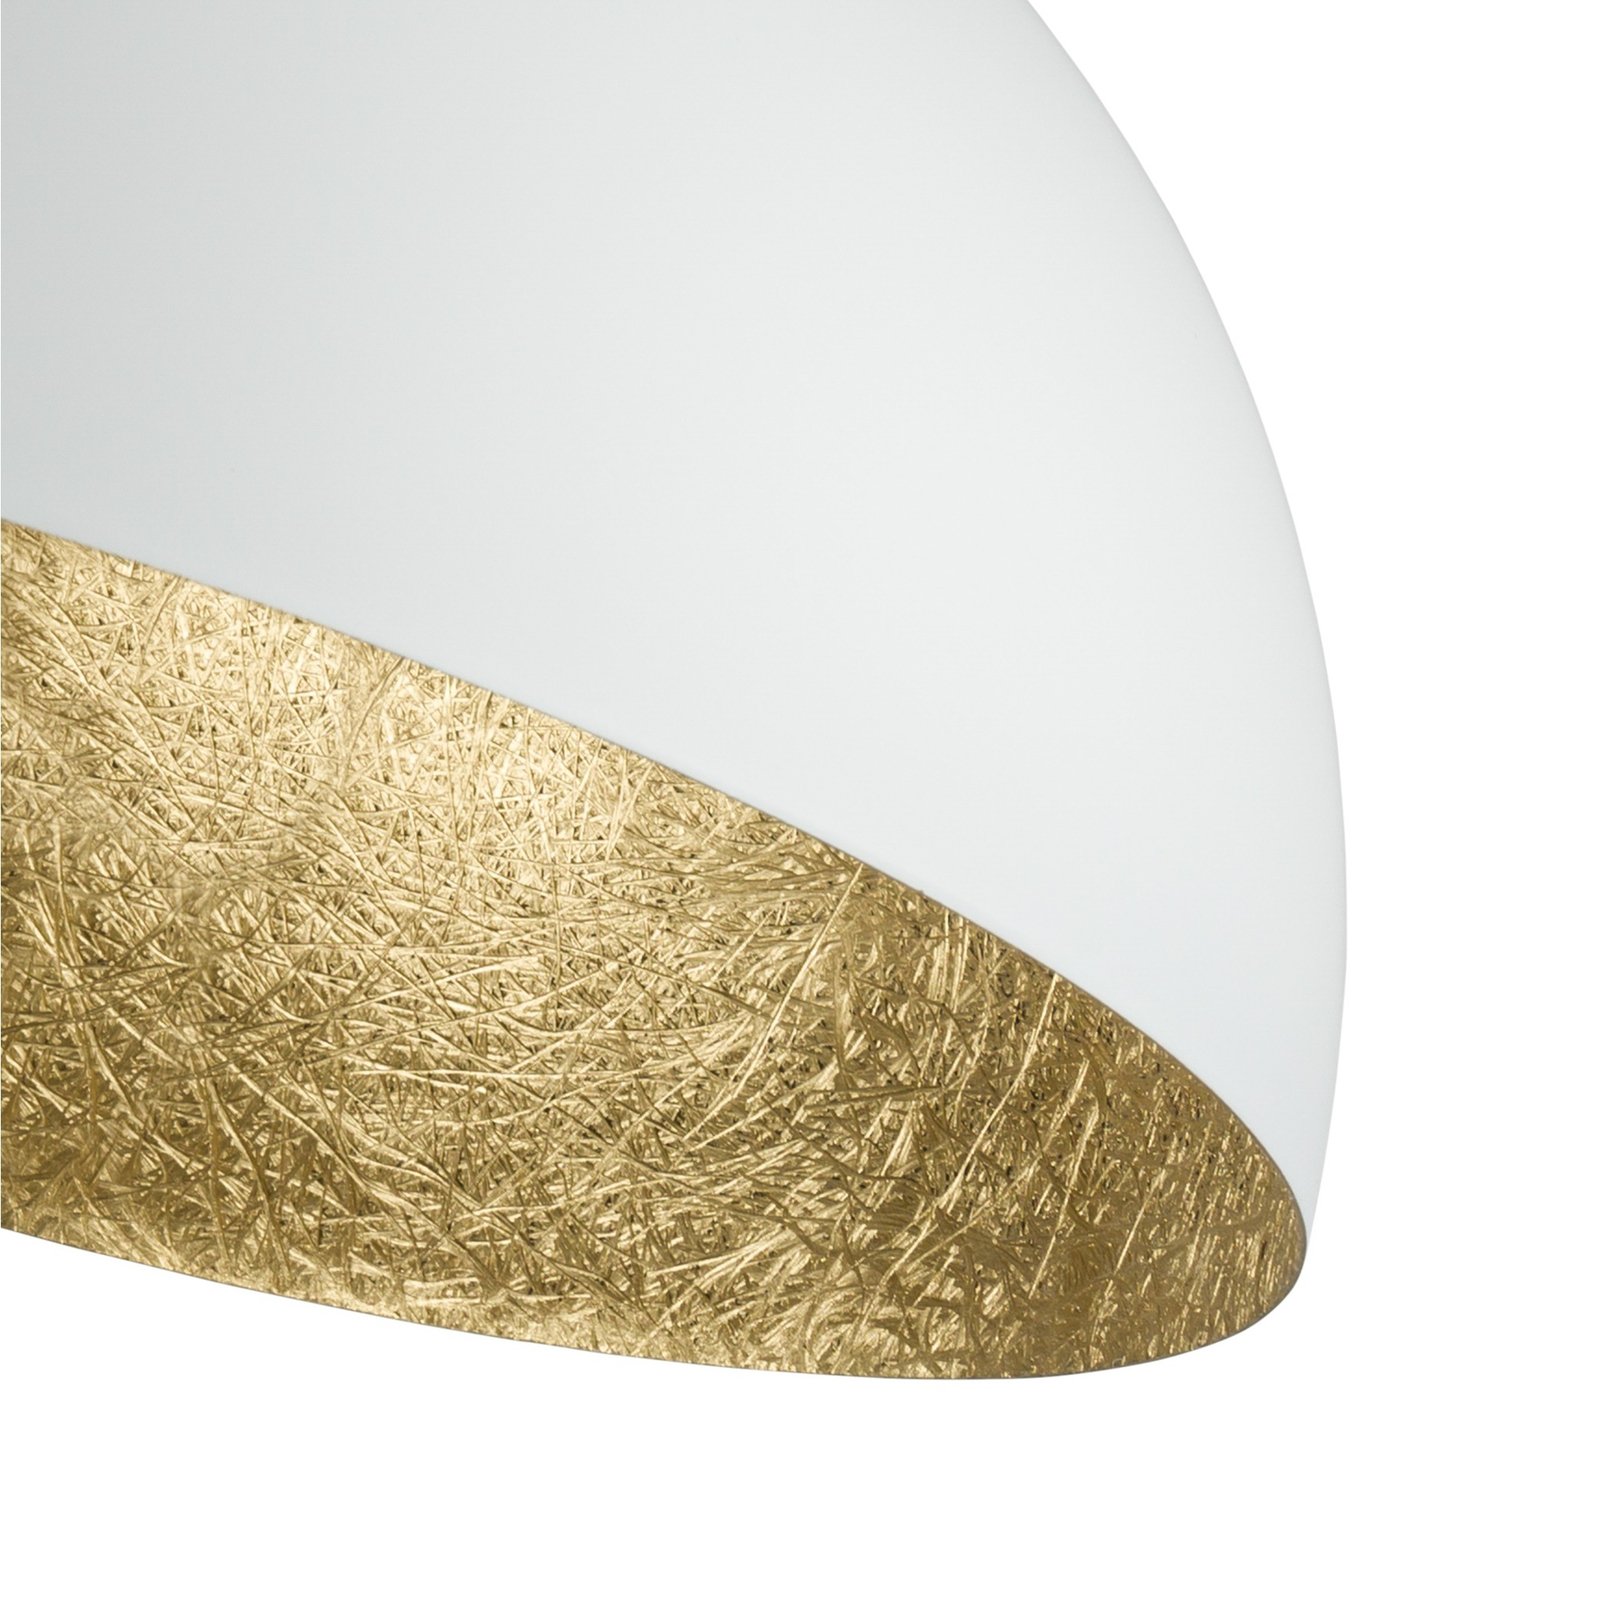 Sfera ceiling light, Ø 35 cm, white/gold